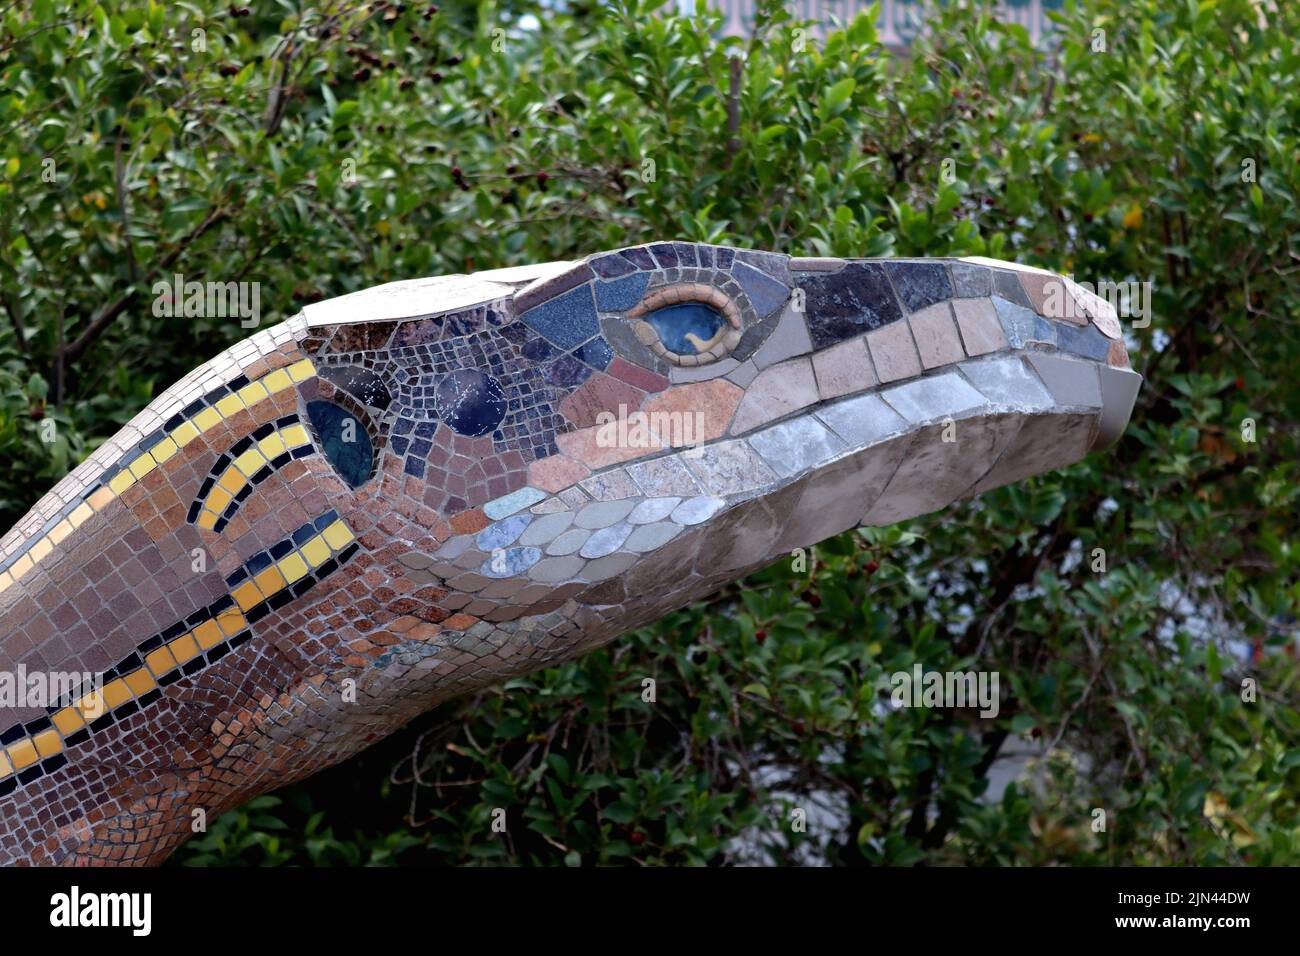 Un des deux lézards géants décorés de mosaïques multicolores exposées au Parque Antonio Gómez Felipe, la Palma, Santa Cruz, aux îles Canaries. Banque D'Images